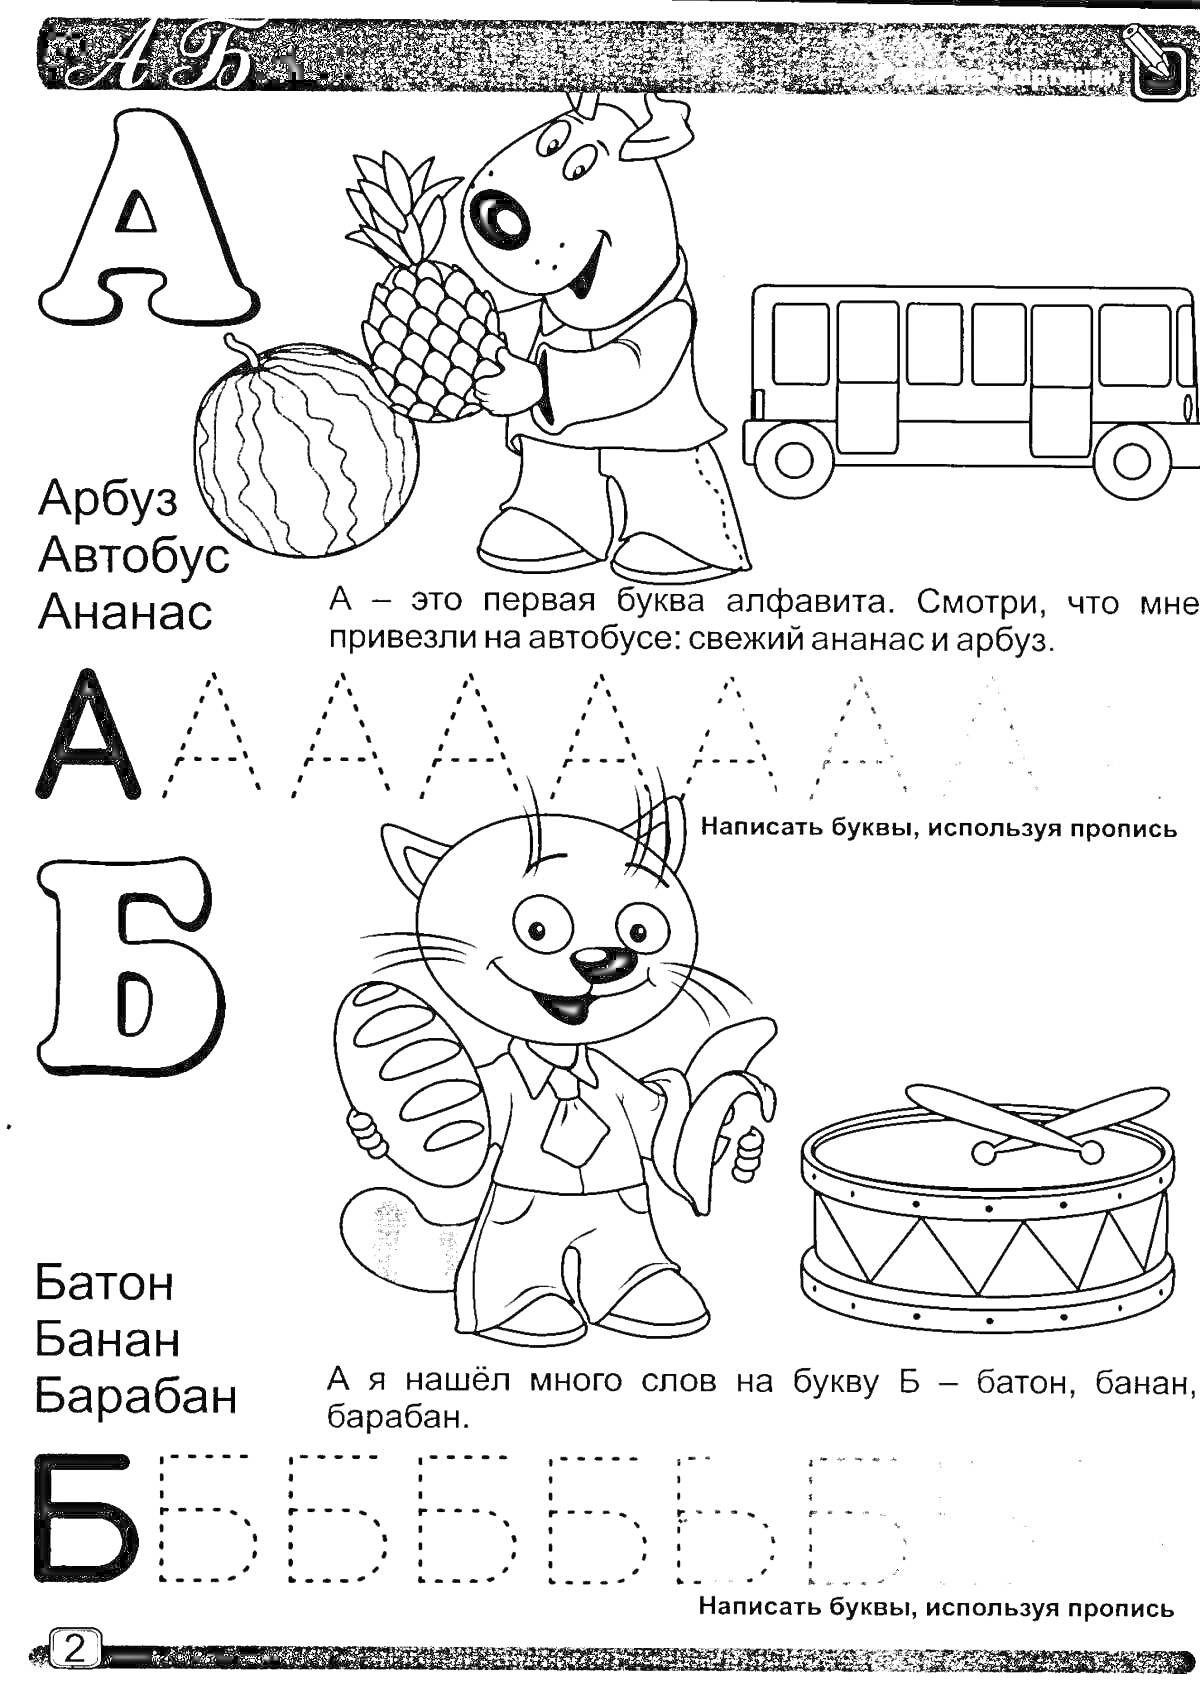 Раскраска Буквы А и Б для детей 4-5 лет. Включает картинки ананаса, арбуза, автобуса, барабана, банана и животного, а также задания для обведения и написания букв.